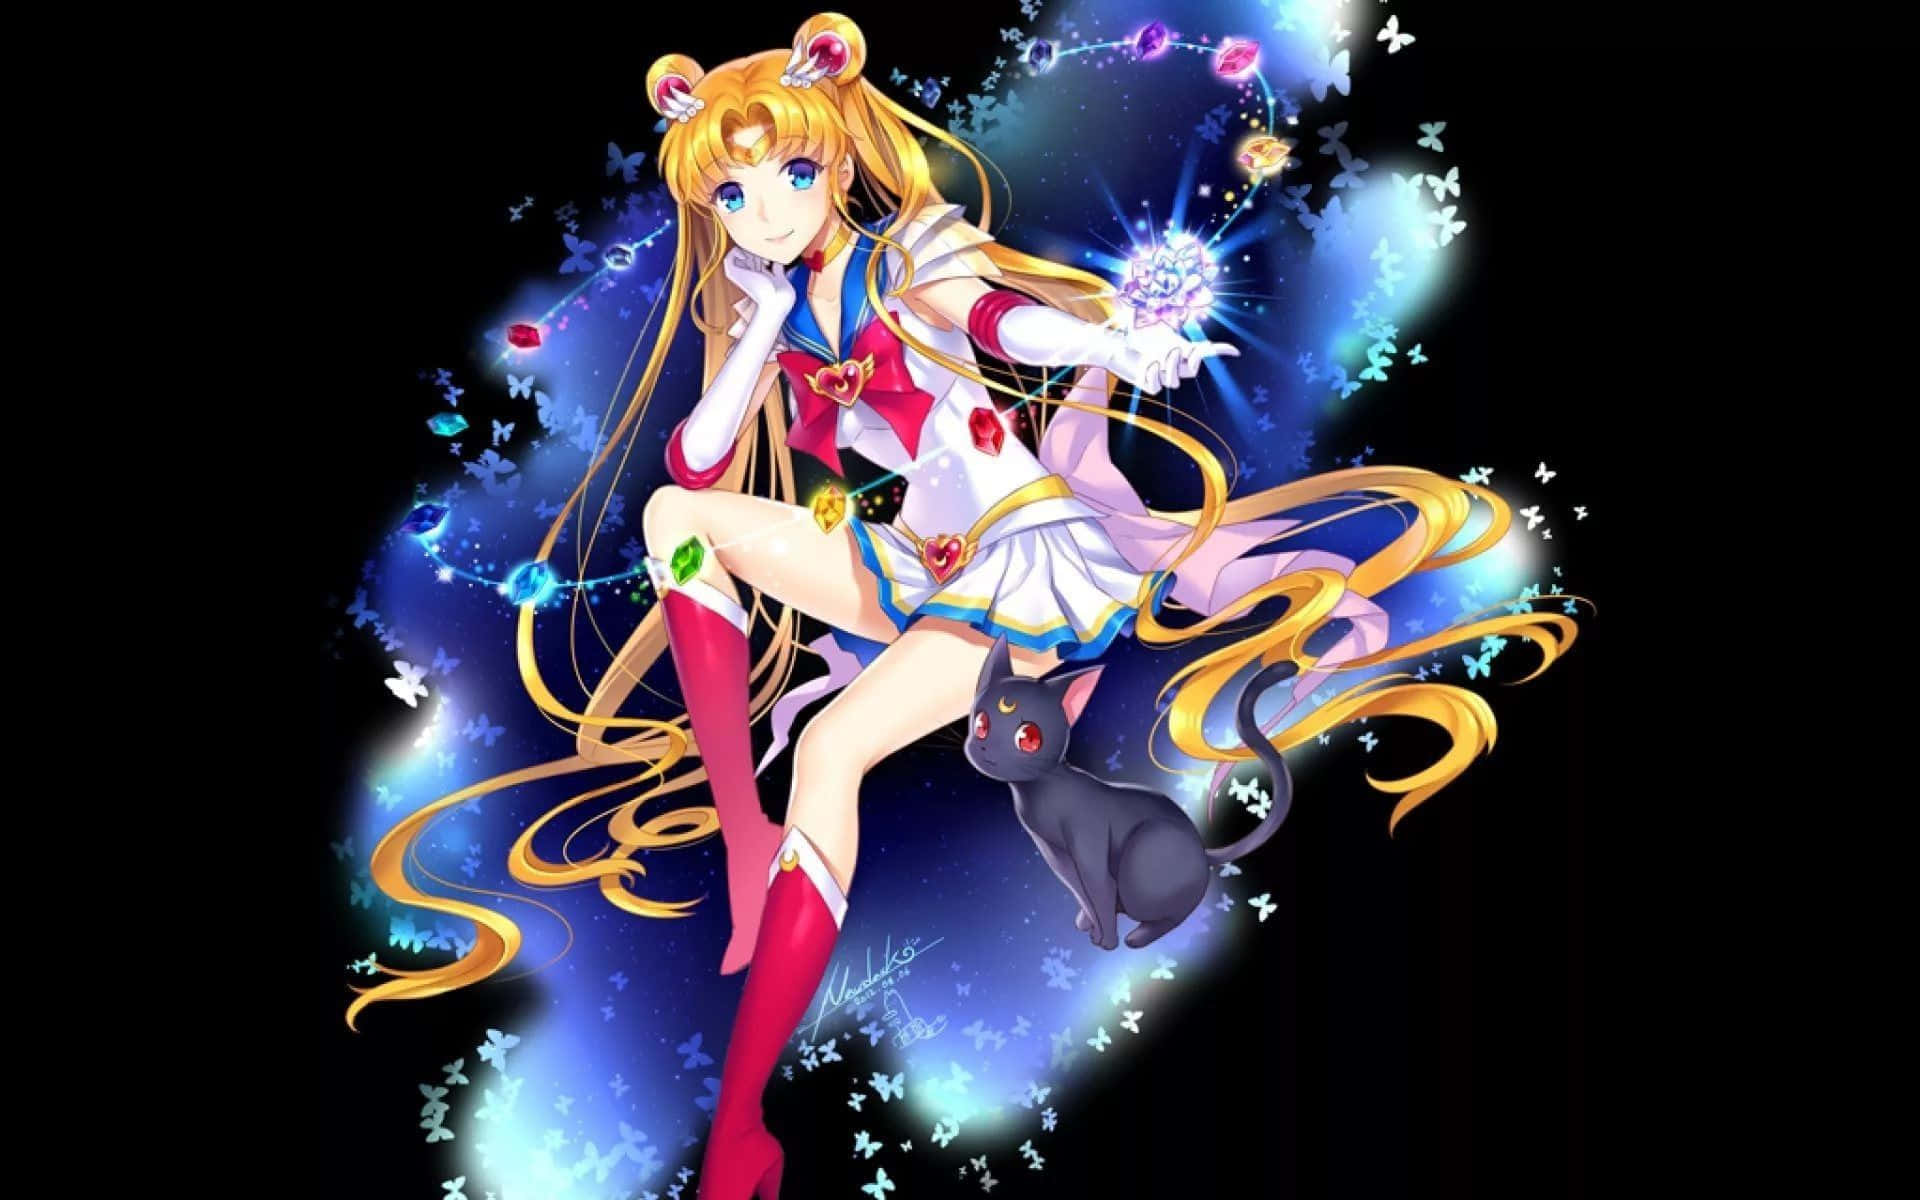 Lindopapel De Parede Inspirado Em Sailor Moon